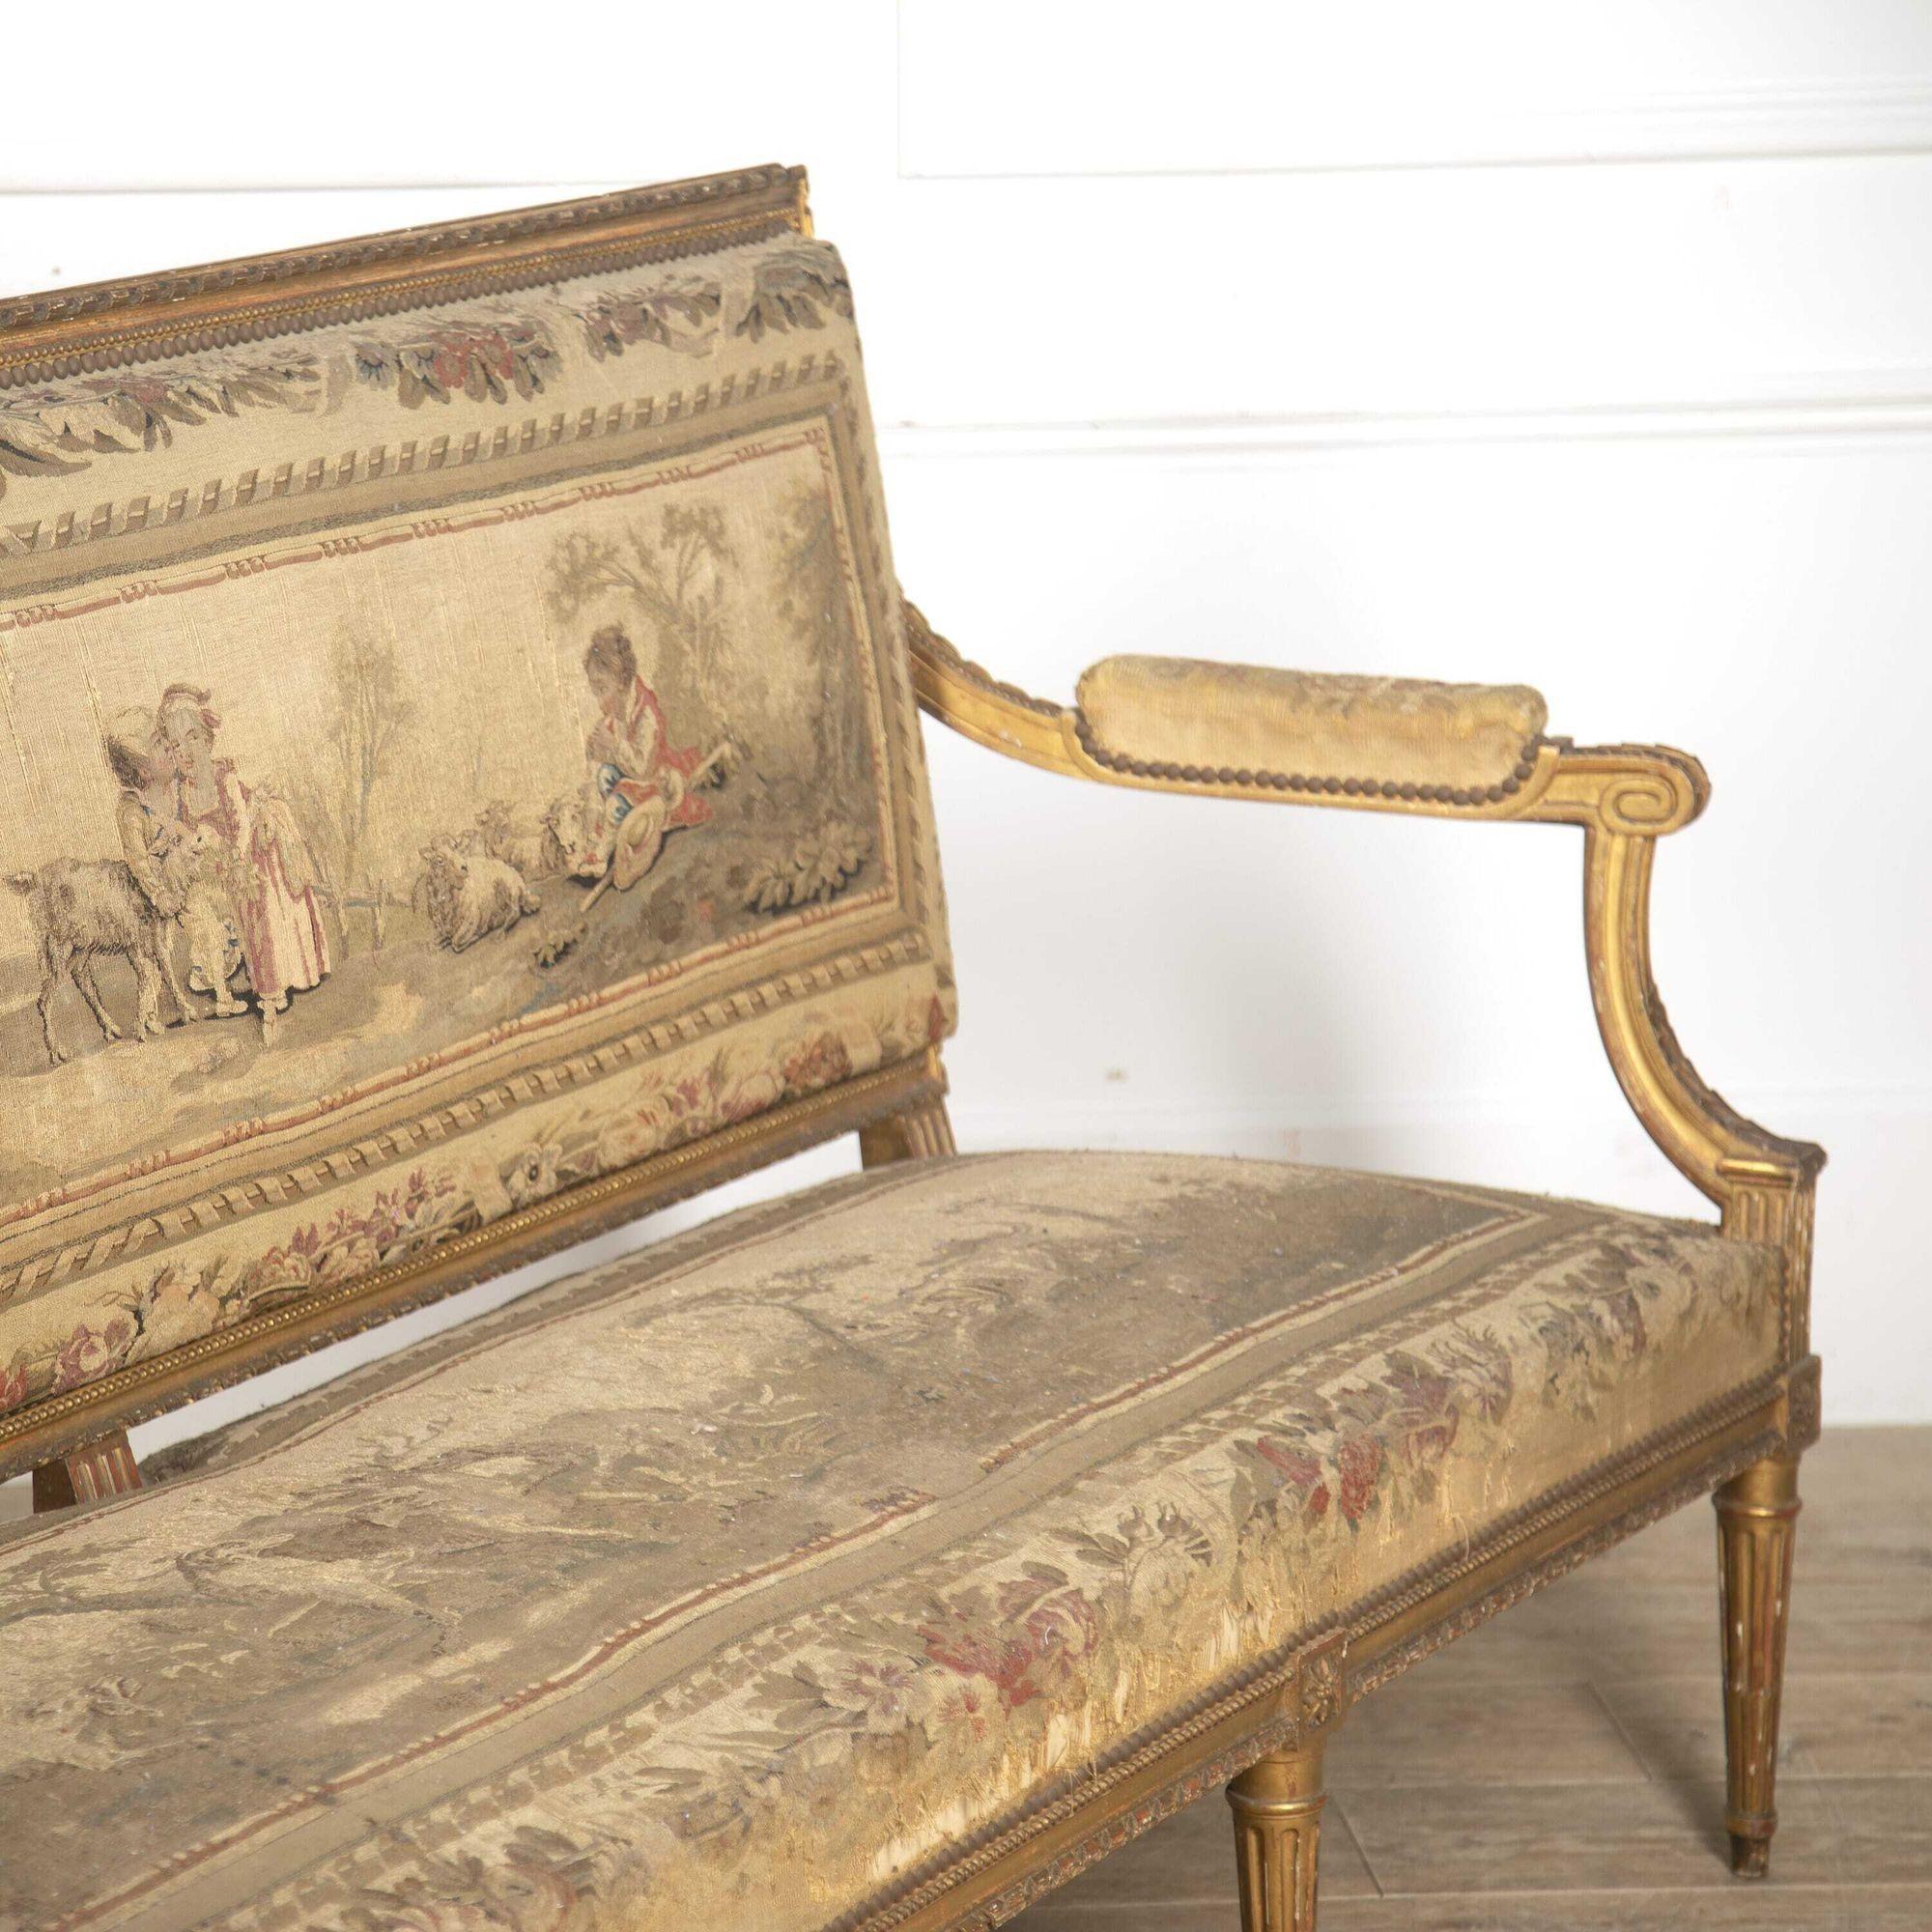 Großes französisches Sofa aus dem 19. Jahrhundert, um 1880. 
Dieses Sofa hat eine elegante, geradlinige Form im neoklassischen Stil. Die gerade Rückenlehne und der Sitz werden durch nach unten gerichtete Armlehnen und Stützen aufgelockert. 
Das